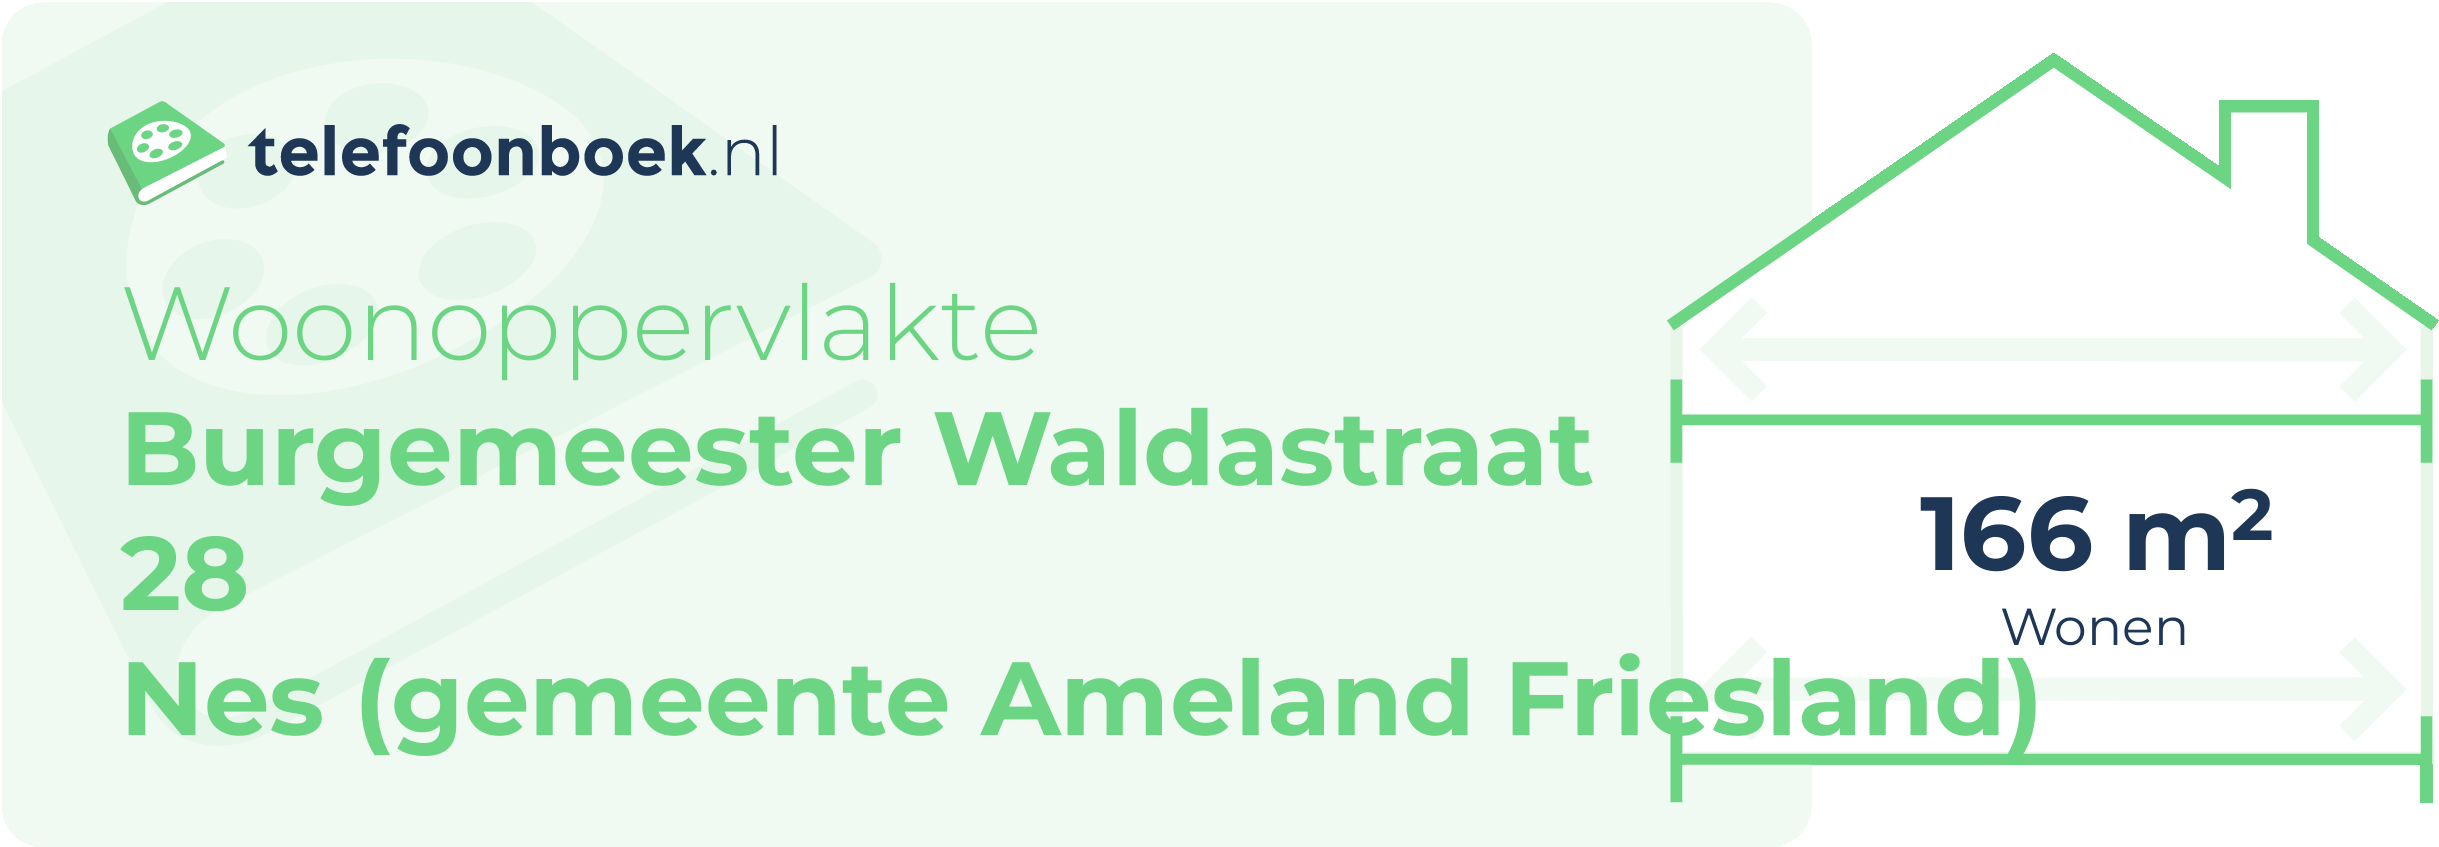 Woonoppervlakte Burgemeester Waldastraat 28 Nes (gemeente Ameland Friesland)